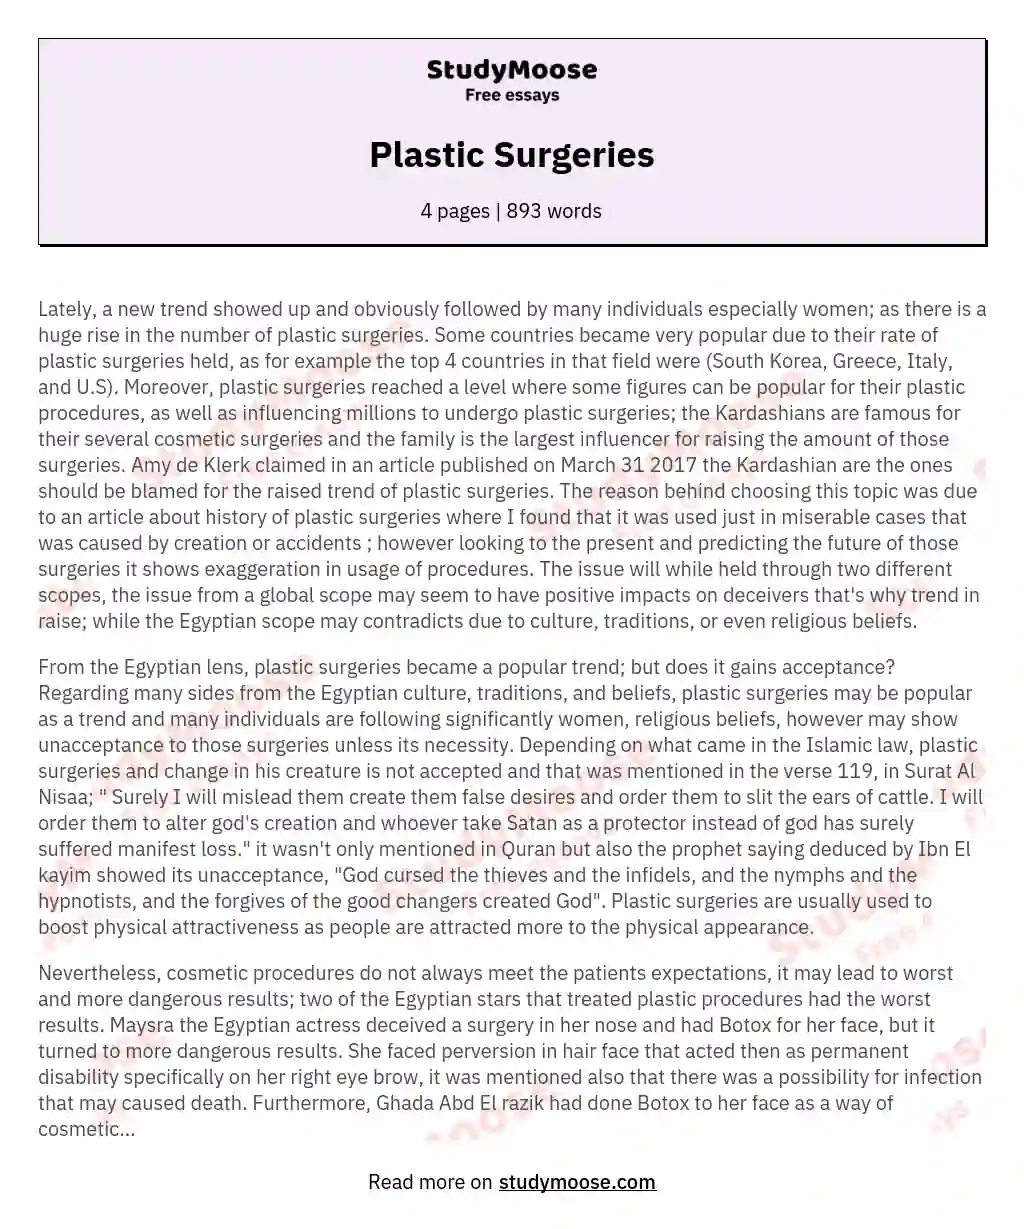 argumentative essay about plastic surgeries